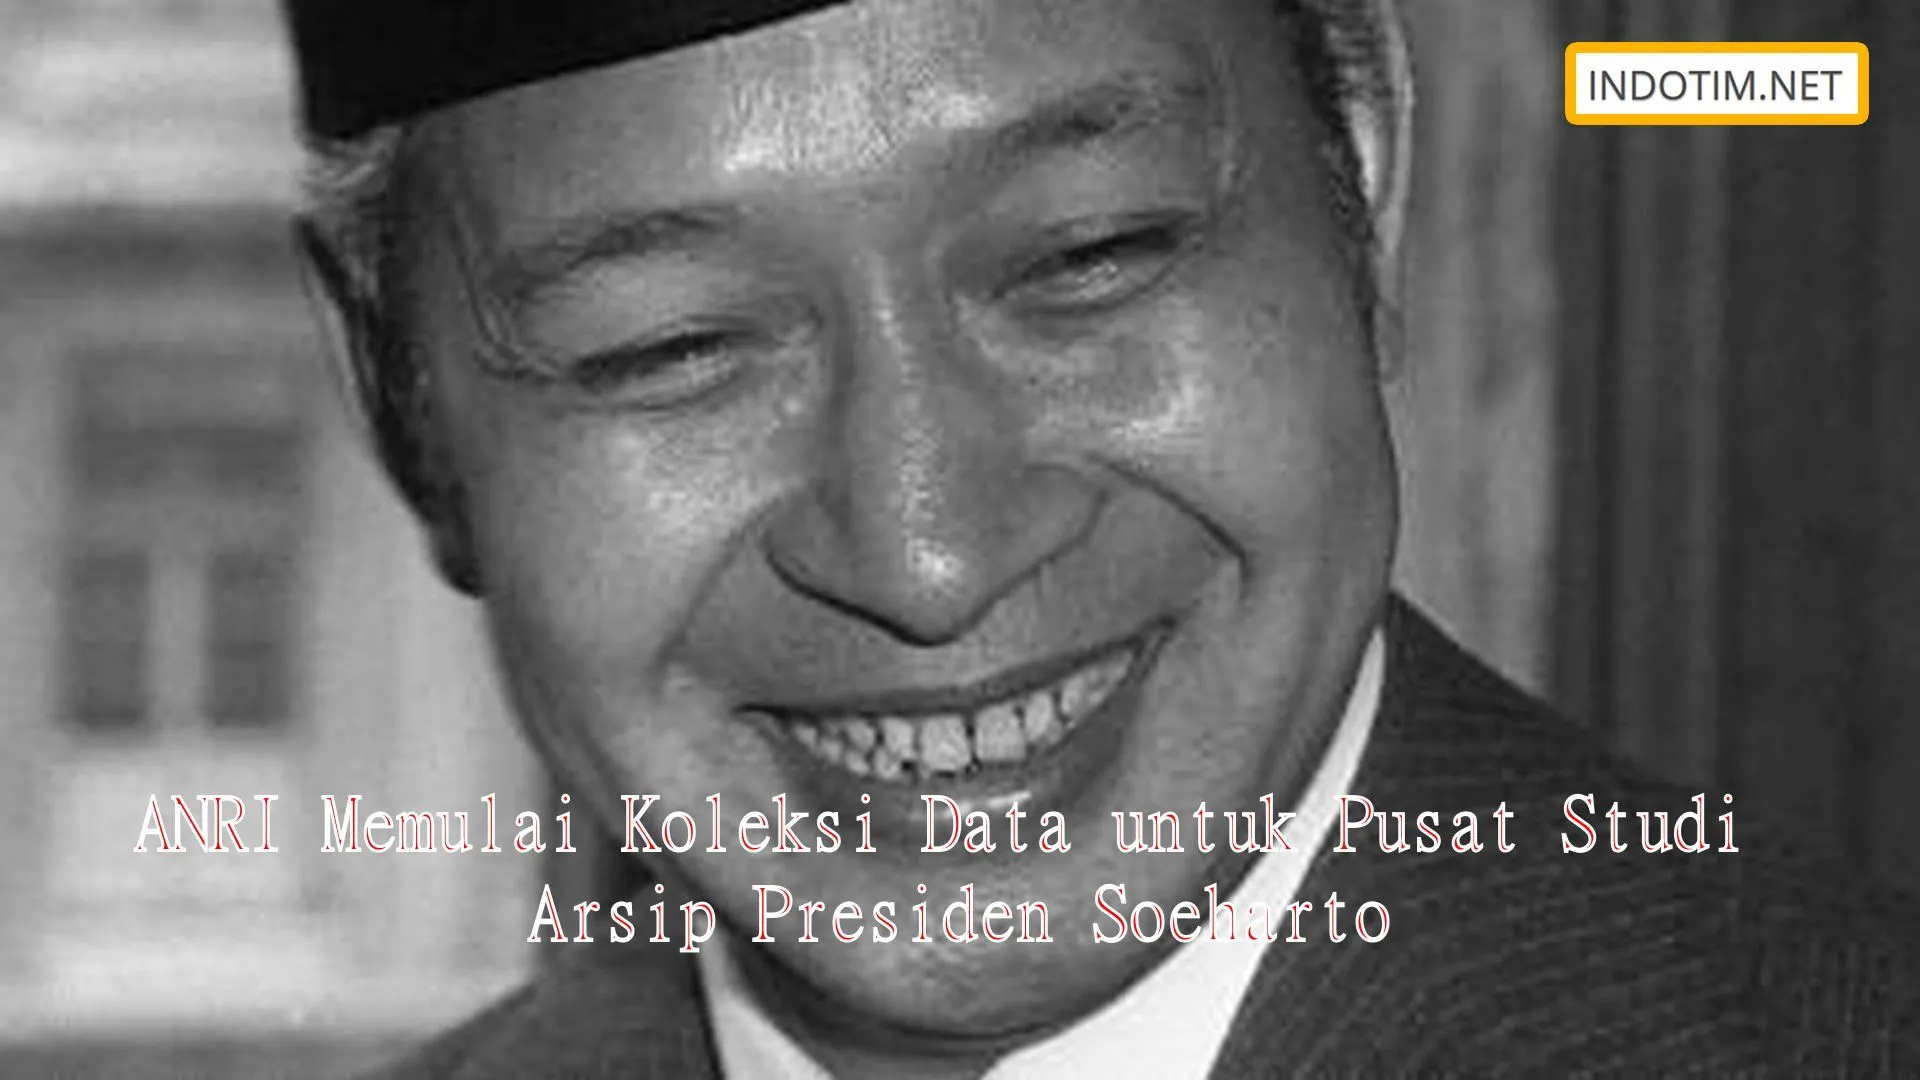 ANRI Memulai Koleksi Data untuk Pusat Studi Arsip Presiden Soeharto